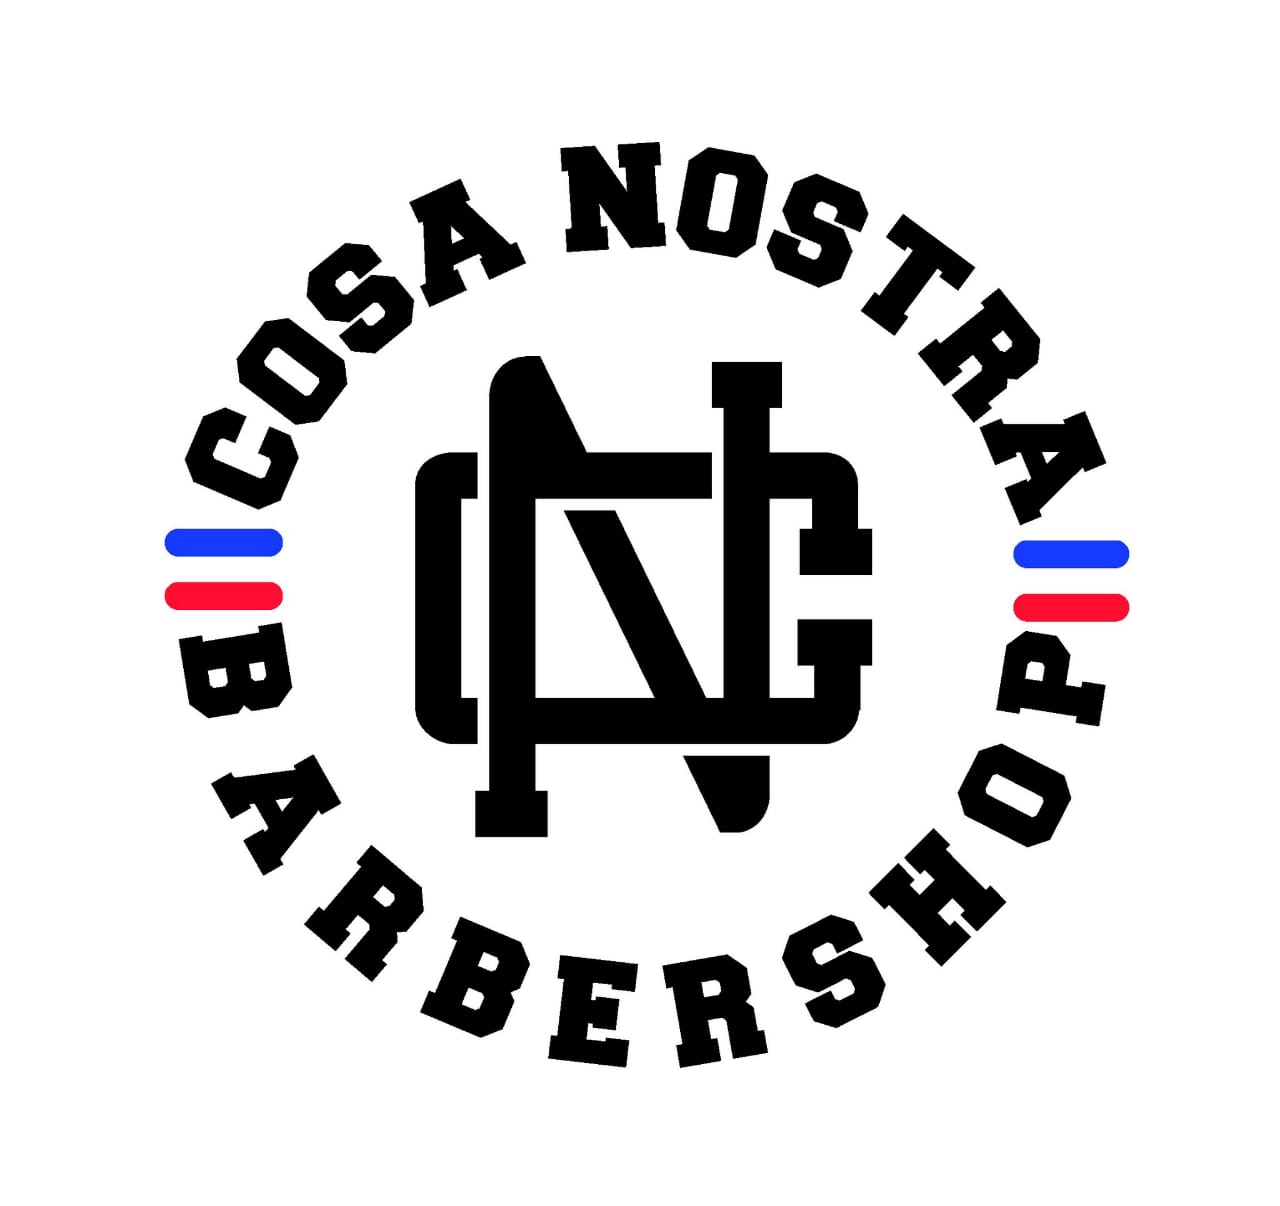 Cosa Nostra Barbershop Boys Club